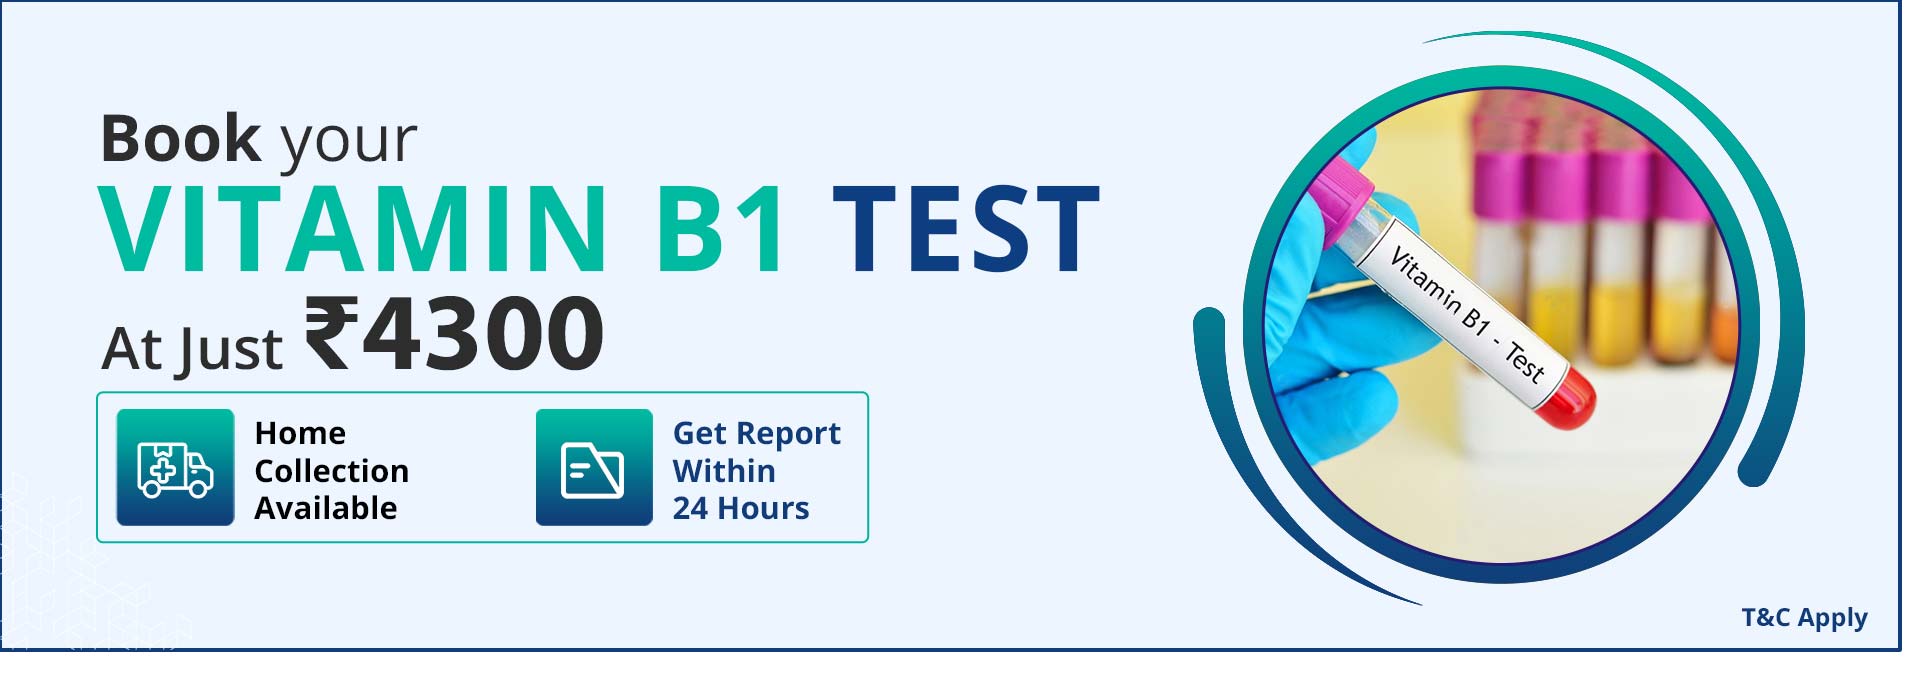 Vitamin b1 test